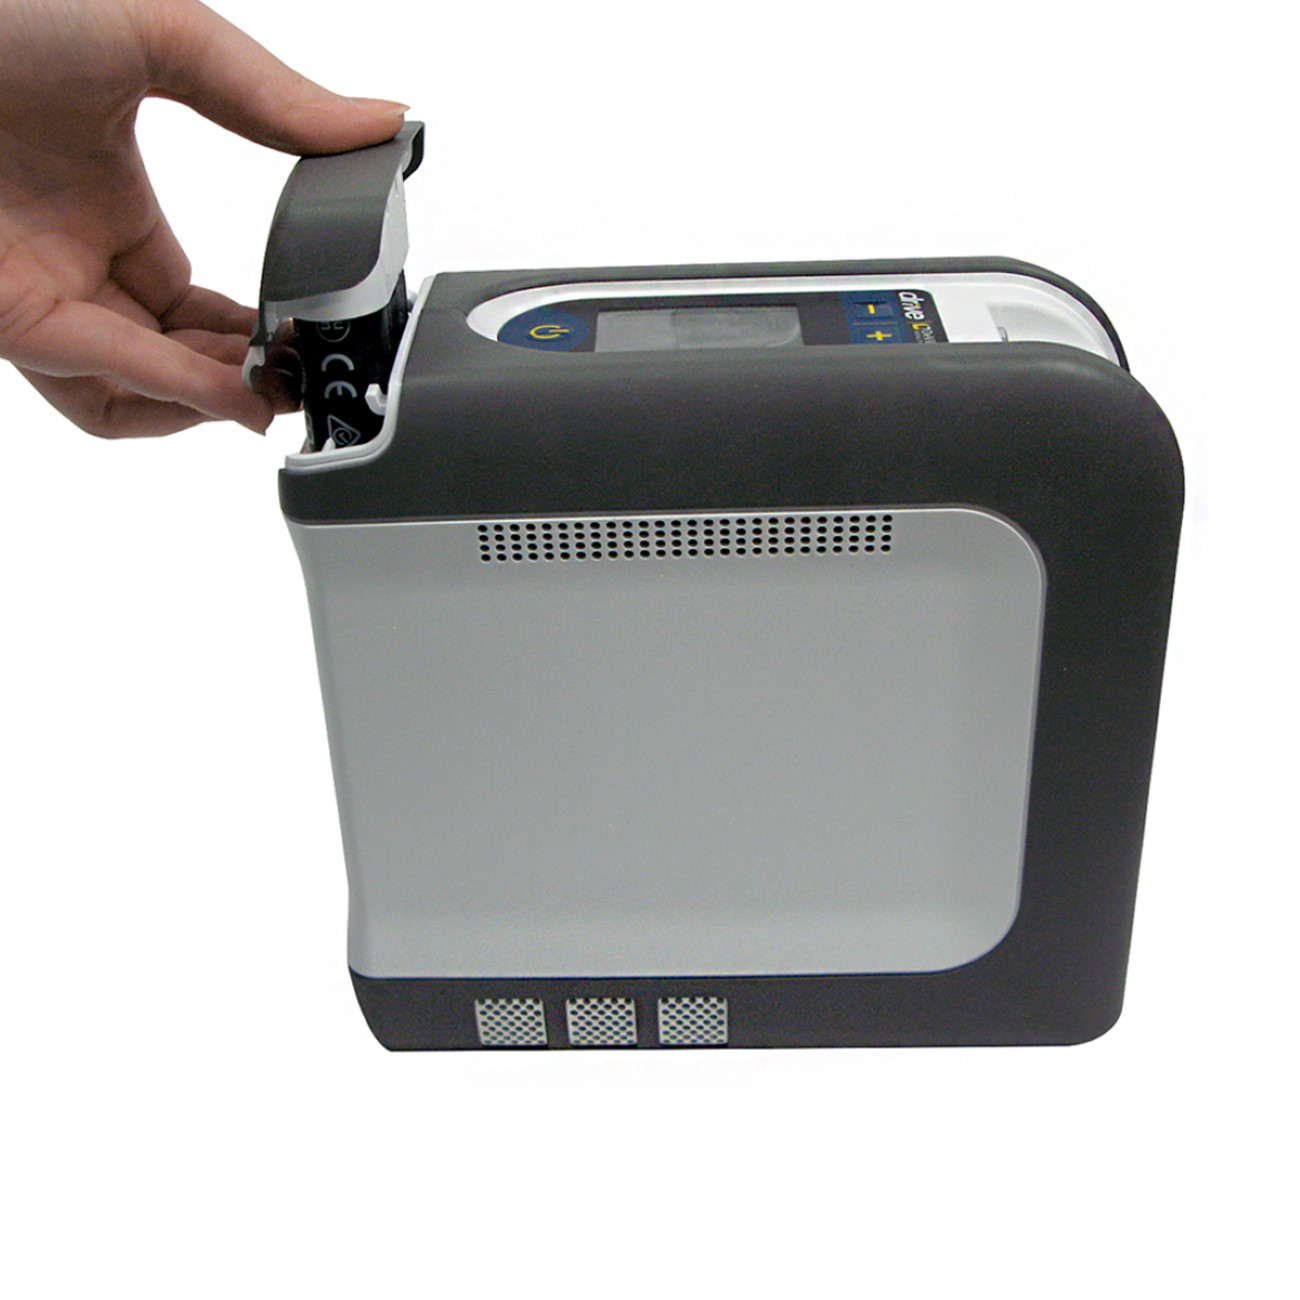 Tragbarer Sauerstoffkonzentrator iGo2 SmartDose | Sauerstoffproduktion 1014 ml/min